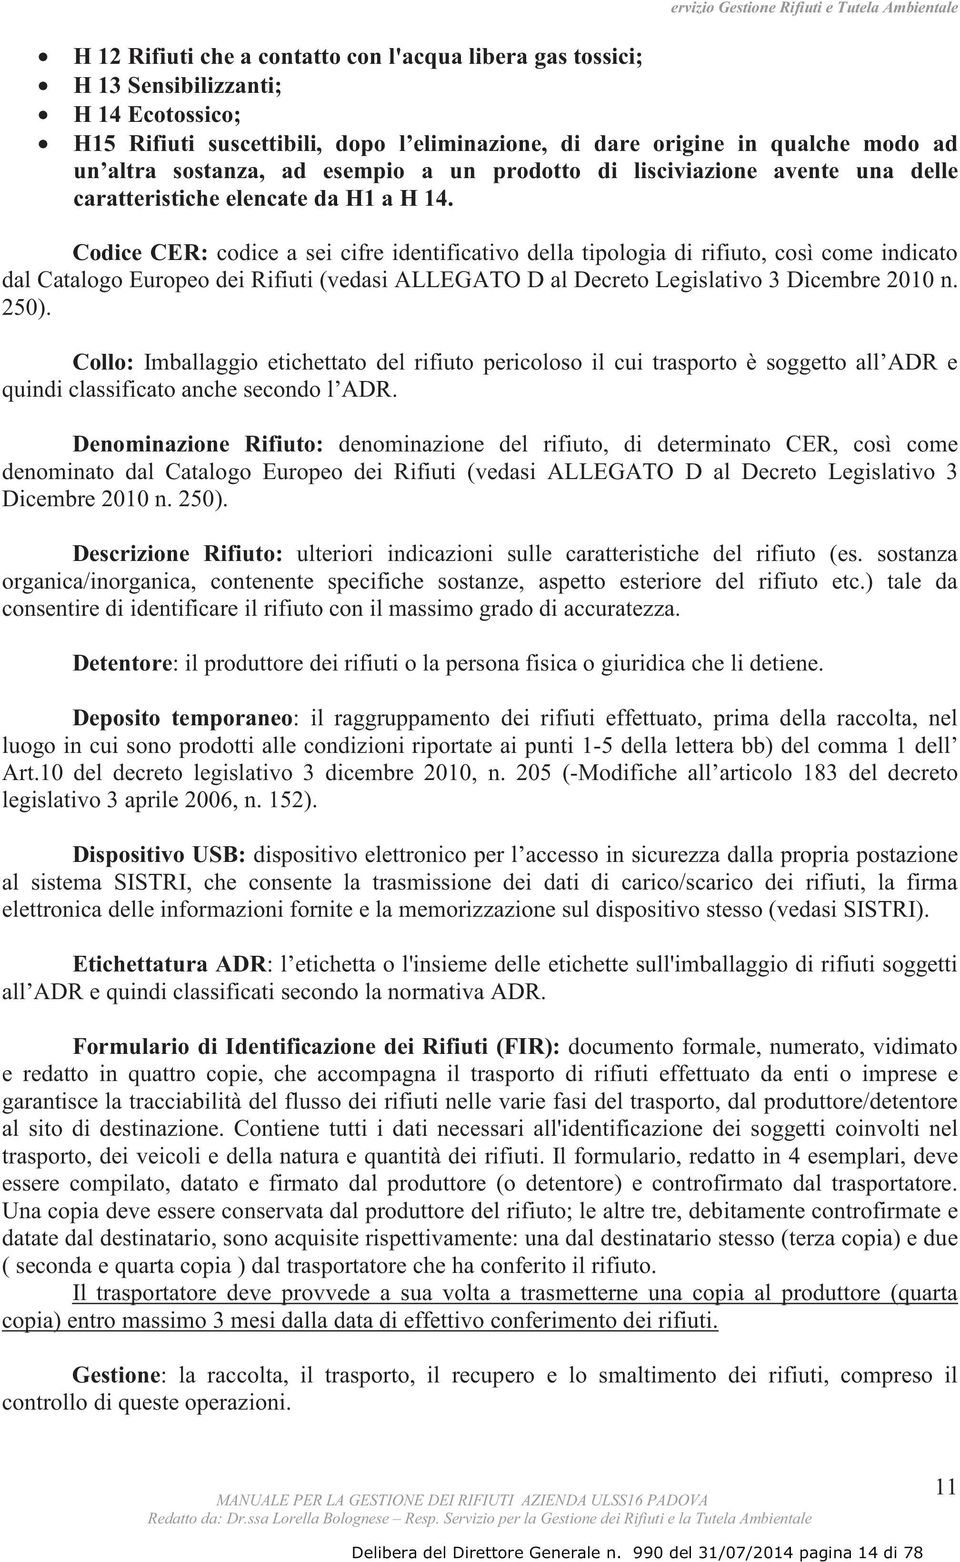 Codice CER: codice a sei cifre identificativo della tipologia di rifiuto, così come indicato dal Catalogo Europeo dei Rifiuti (vedasi ALLEGATO D al Decreto Legislativo 3 Dicembre 2010 n. 250).